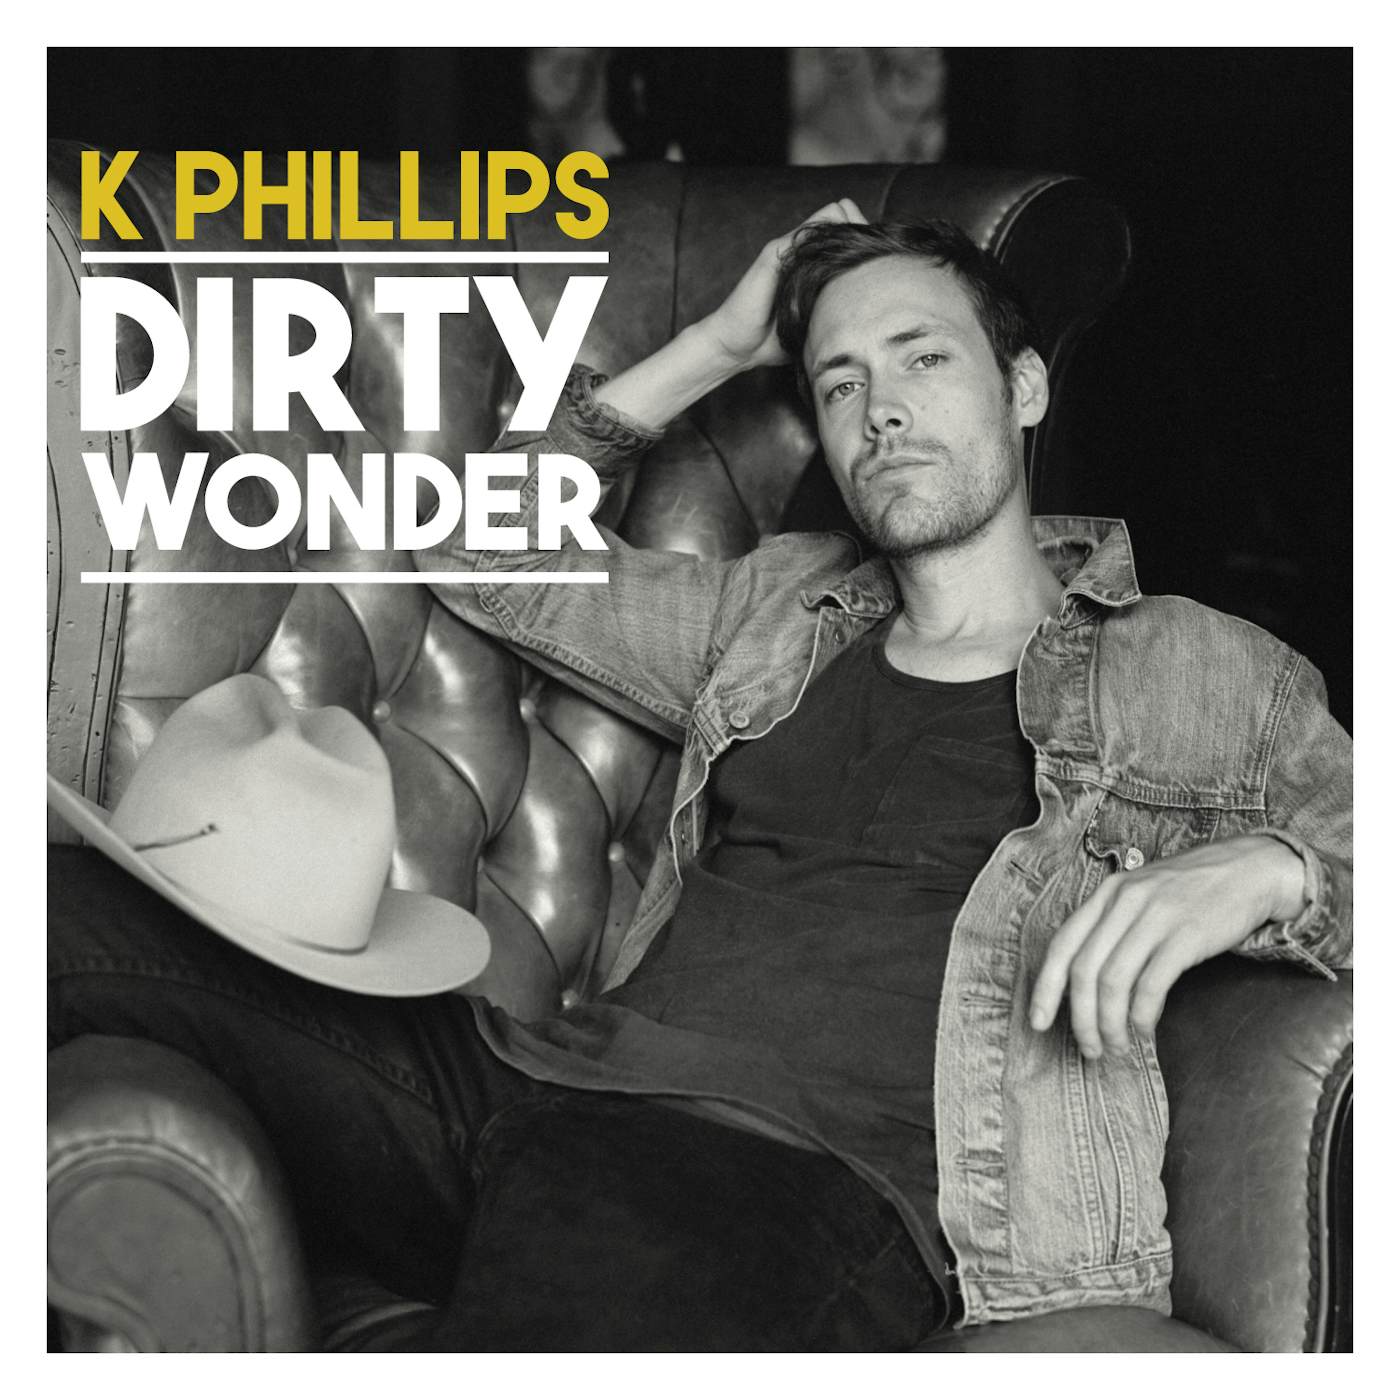 K Phillips DIRTY WONDER CD